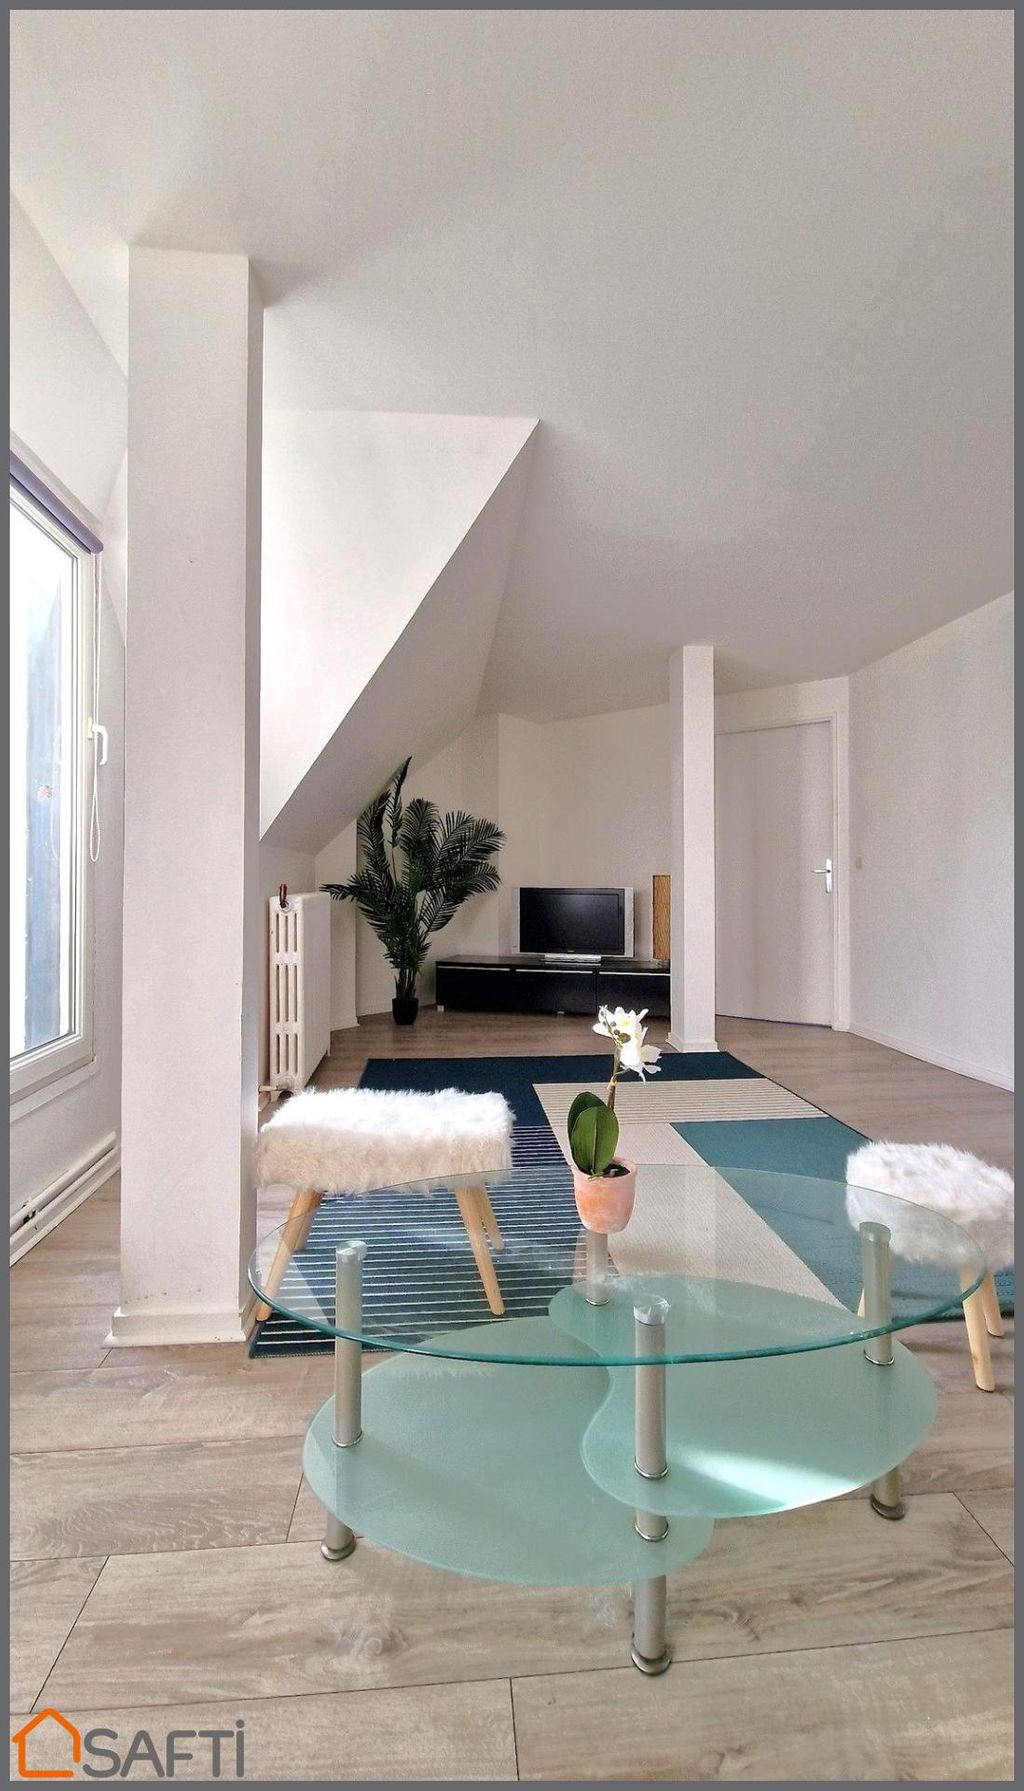 Achat appartement 3 pièce(s) Neuilly-sur-Seine